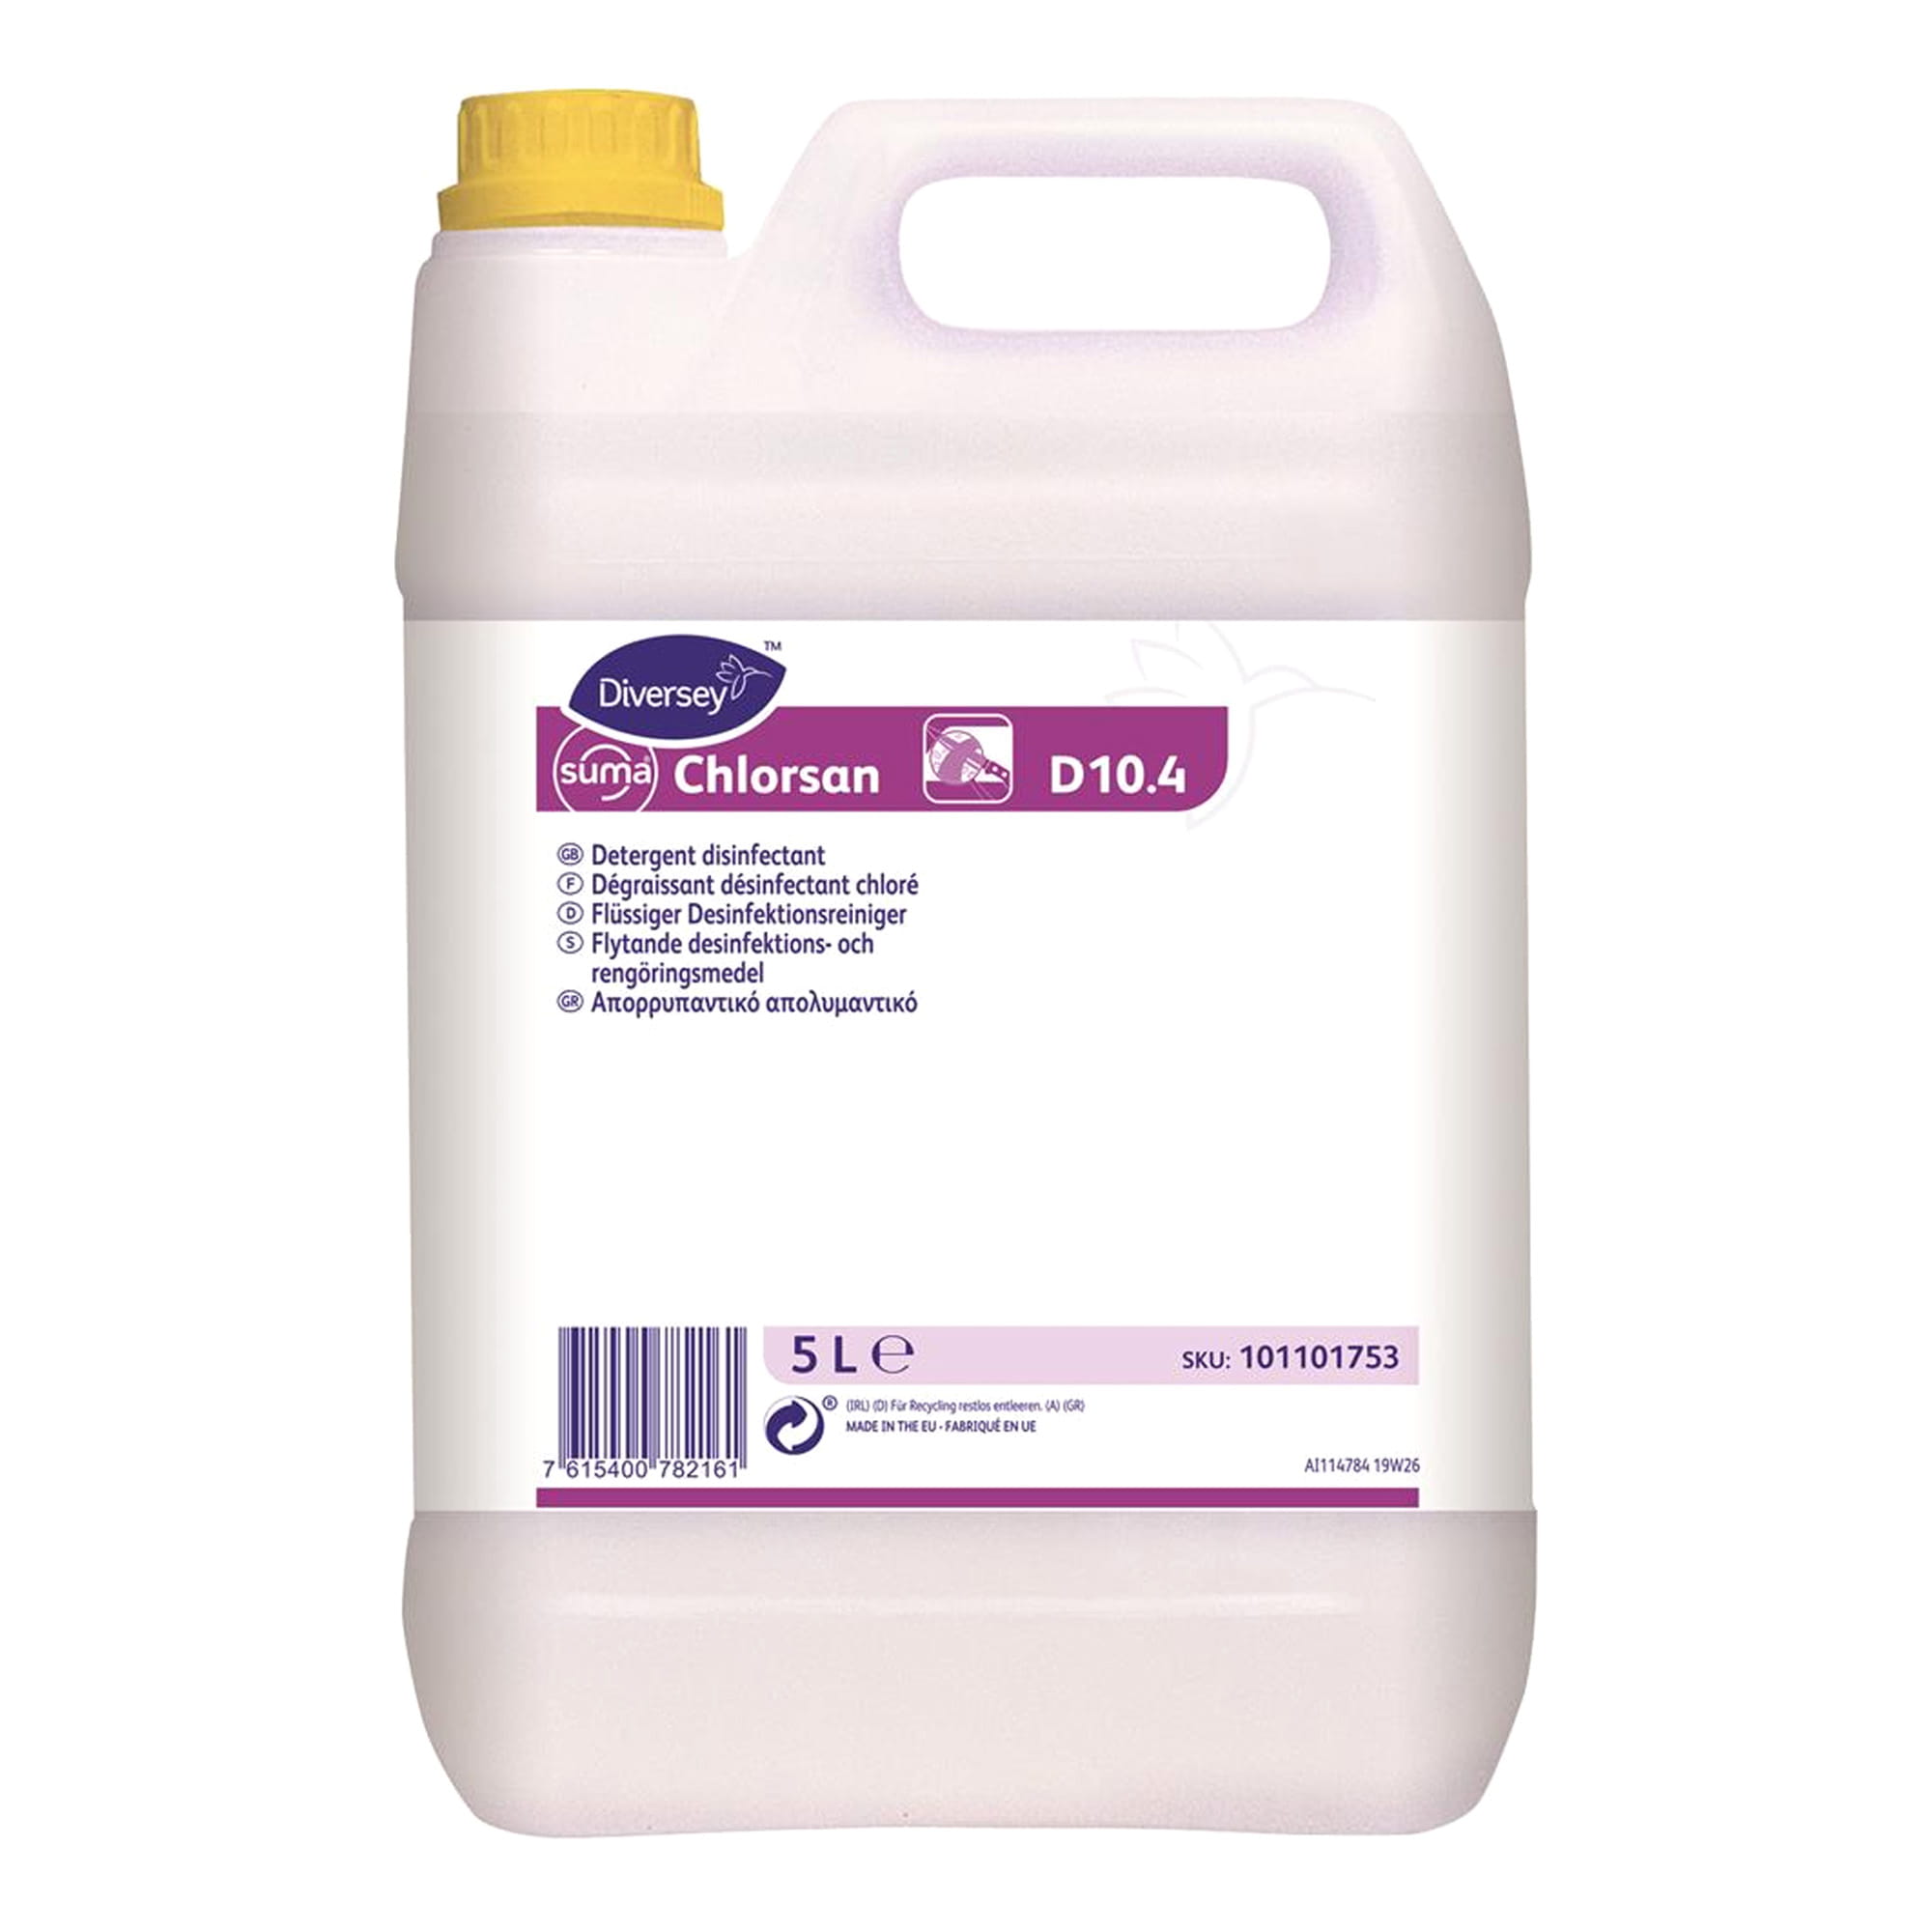 Suma Chlorsan D10.4 flüssiger Desinfektionsreiniger 5 Liter Kanister 7516659_1